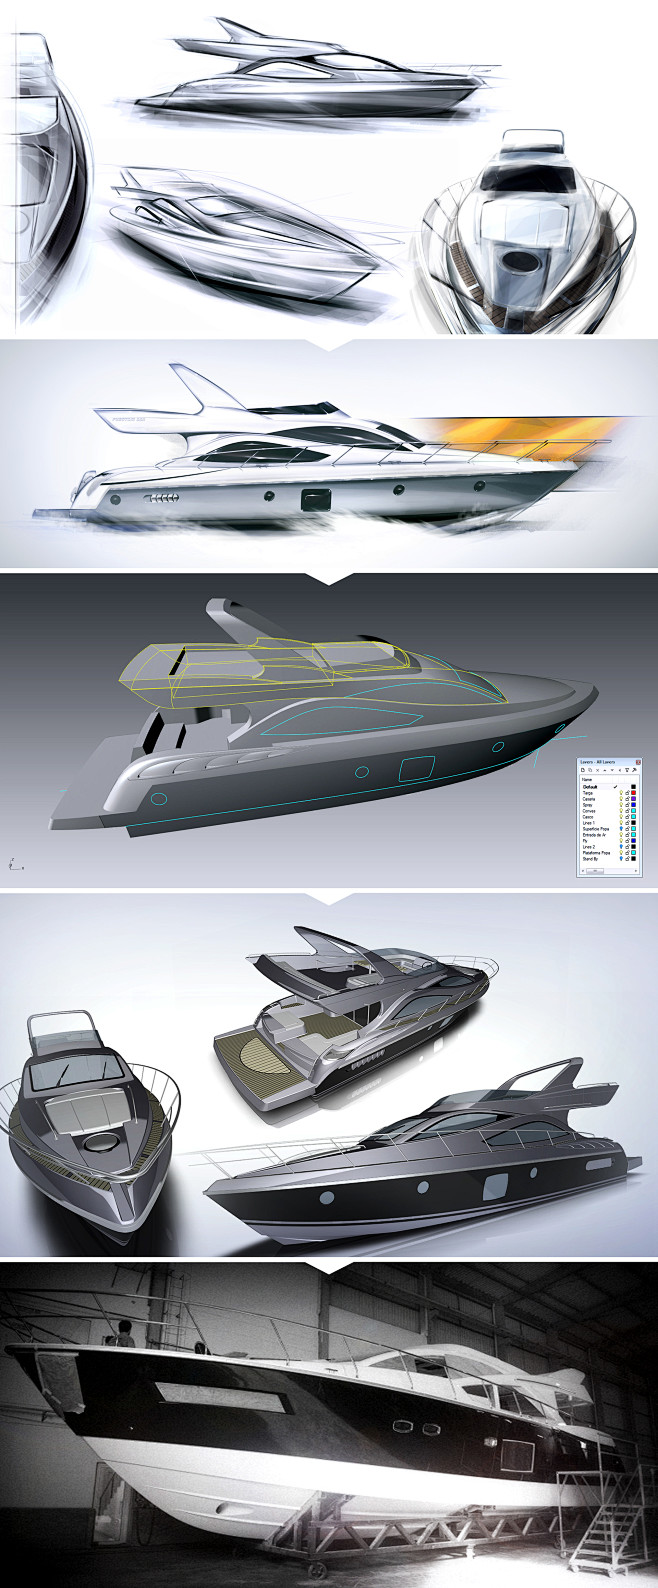 巴西Schaefer6豪华游艇设计~ 
...